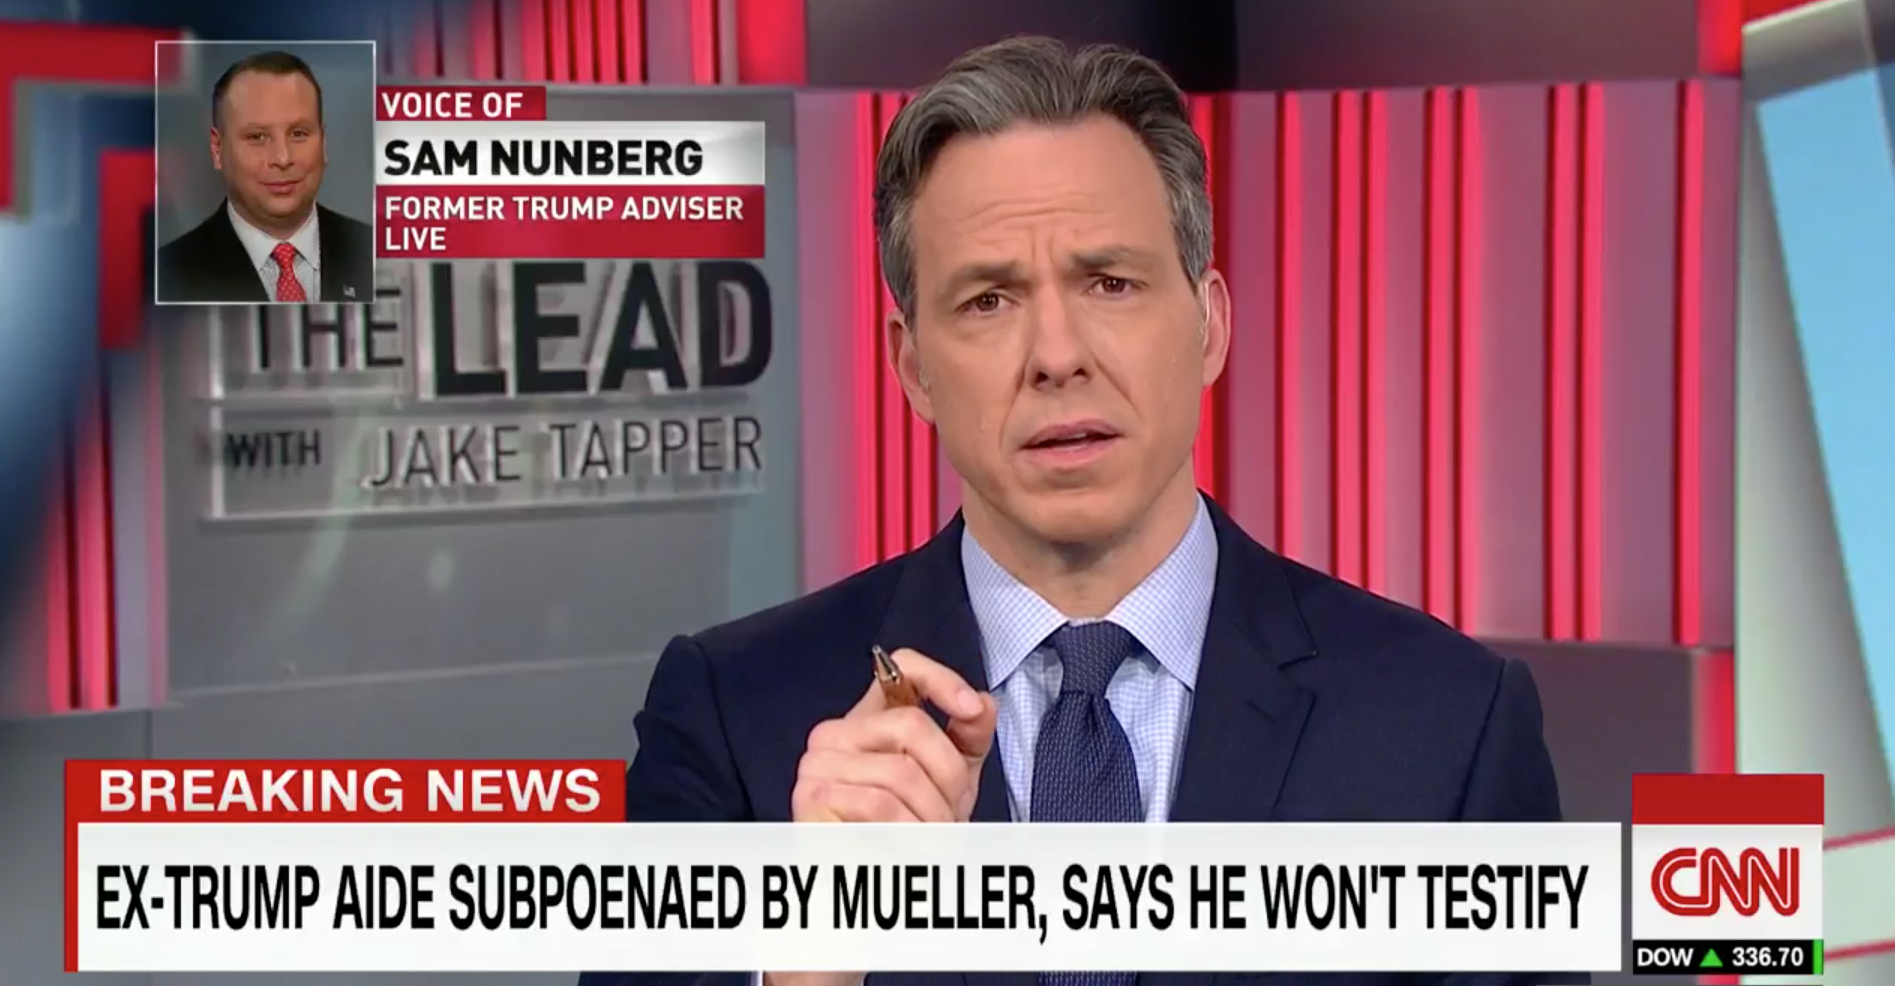 Sam Nunberg on CNN.